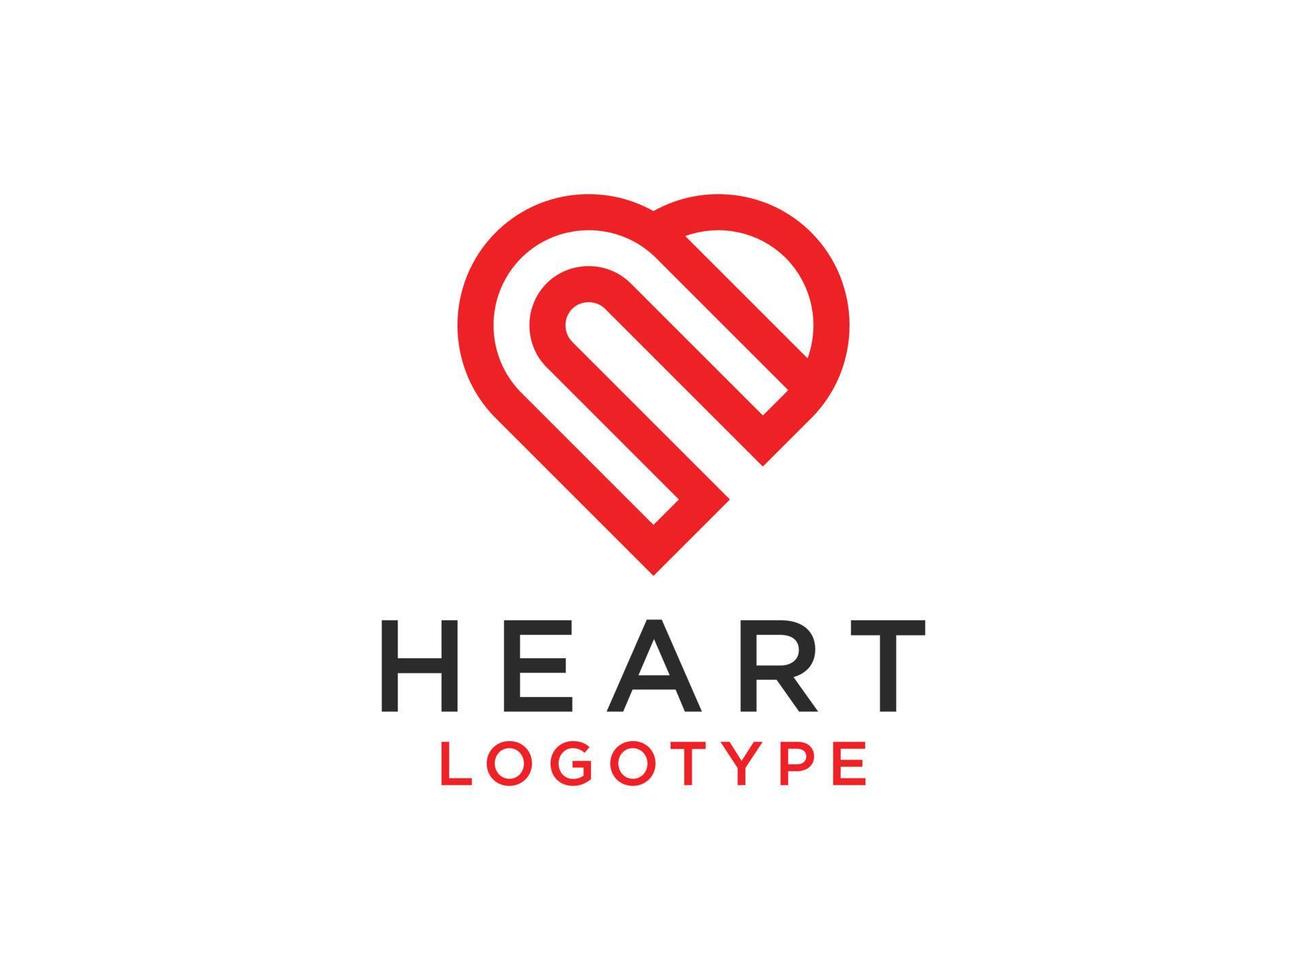 logotipo abstracto del corazón. estilo de caligrafía de corazón dibujado a mano decorativo rojo aislado sobre fondo blanco. elemento de plantilla de diseño de ilustración de vector plano.